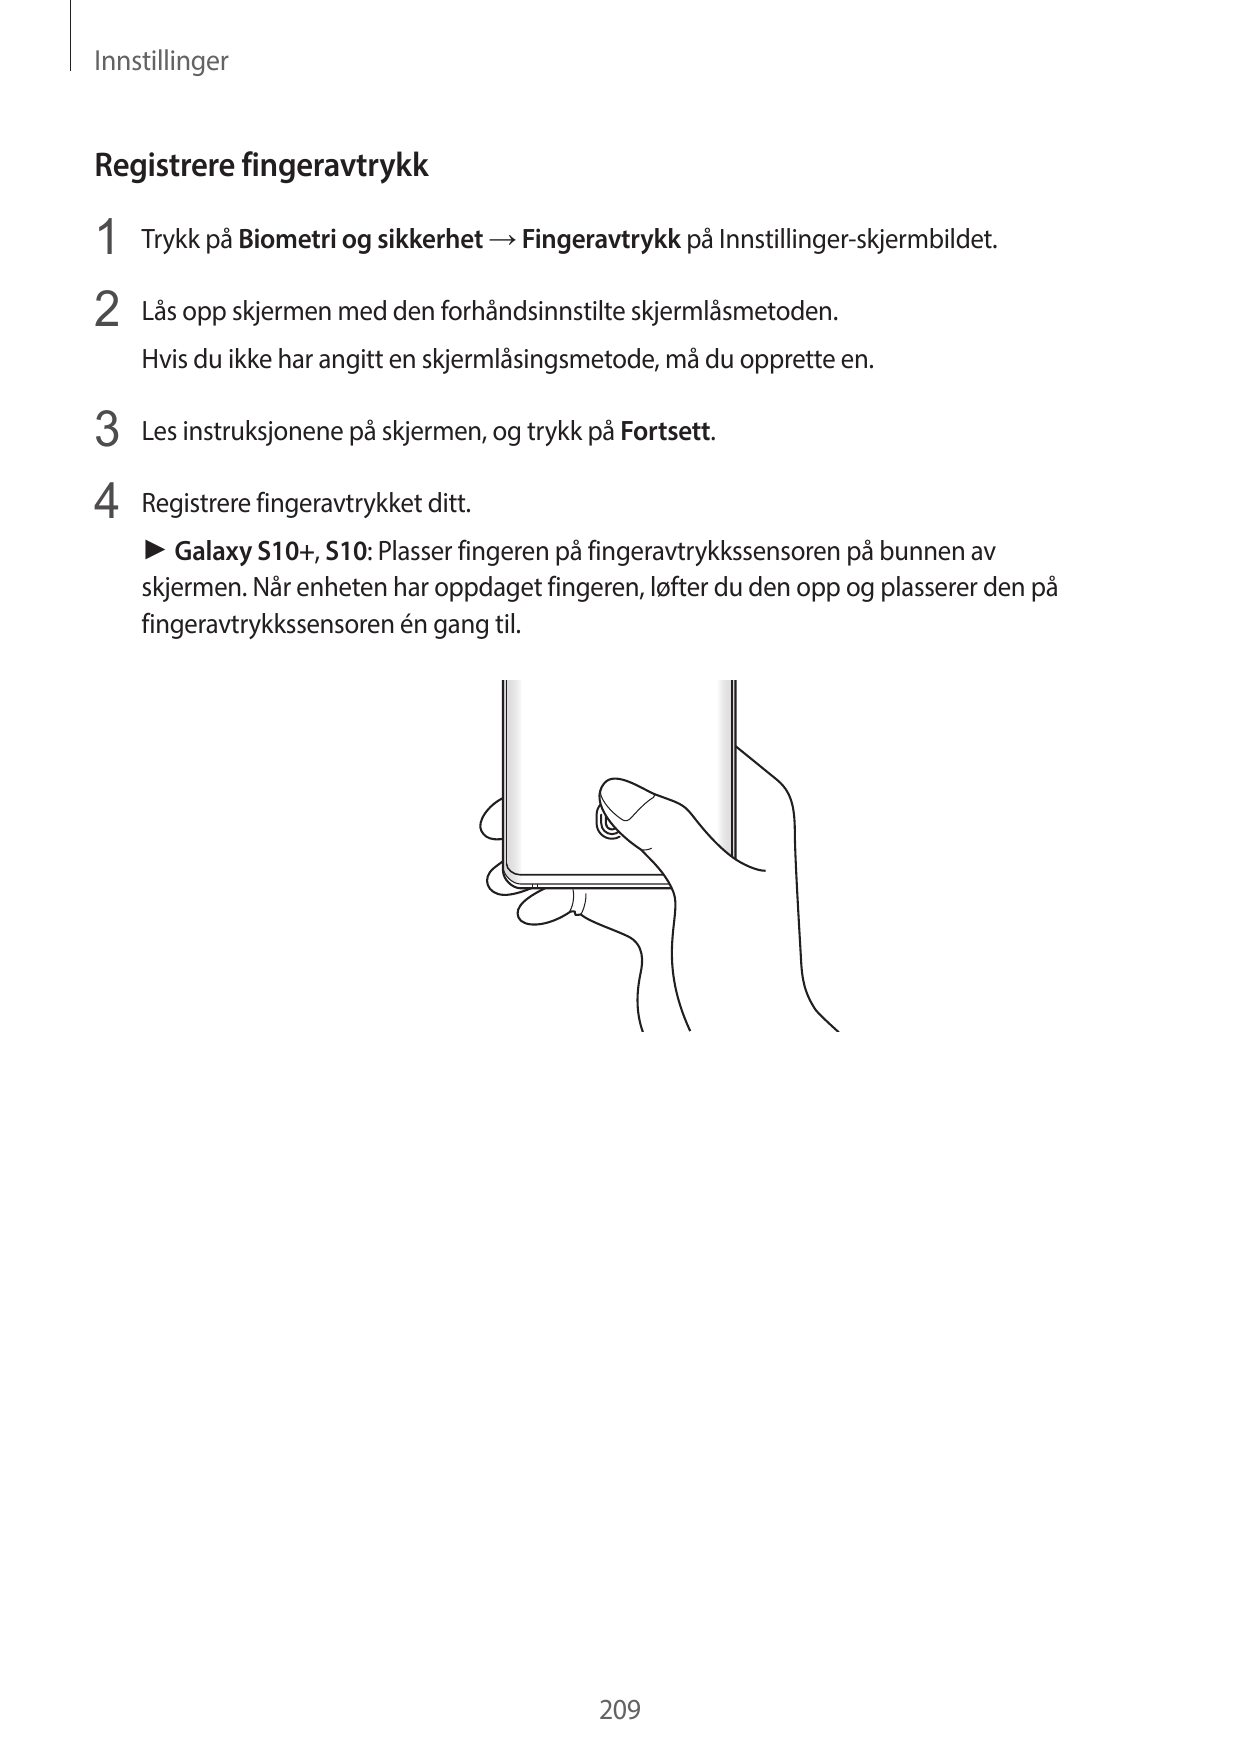 InnstillingerRegistrere fingeravtrykk1 Trykk på Biometri og sikkerhet → Fingeravtrykk på Innstillinger-skjermbildet.2 Lås opp sk